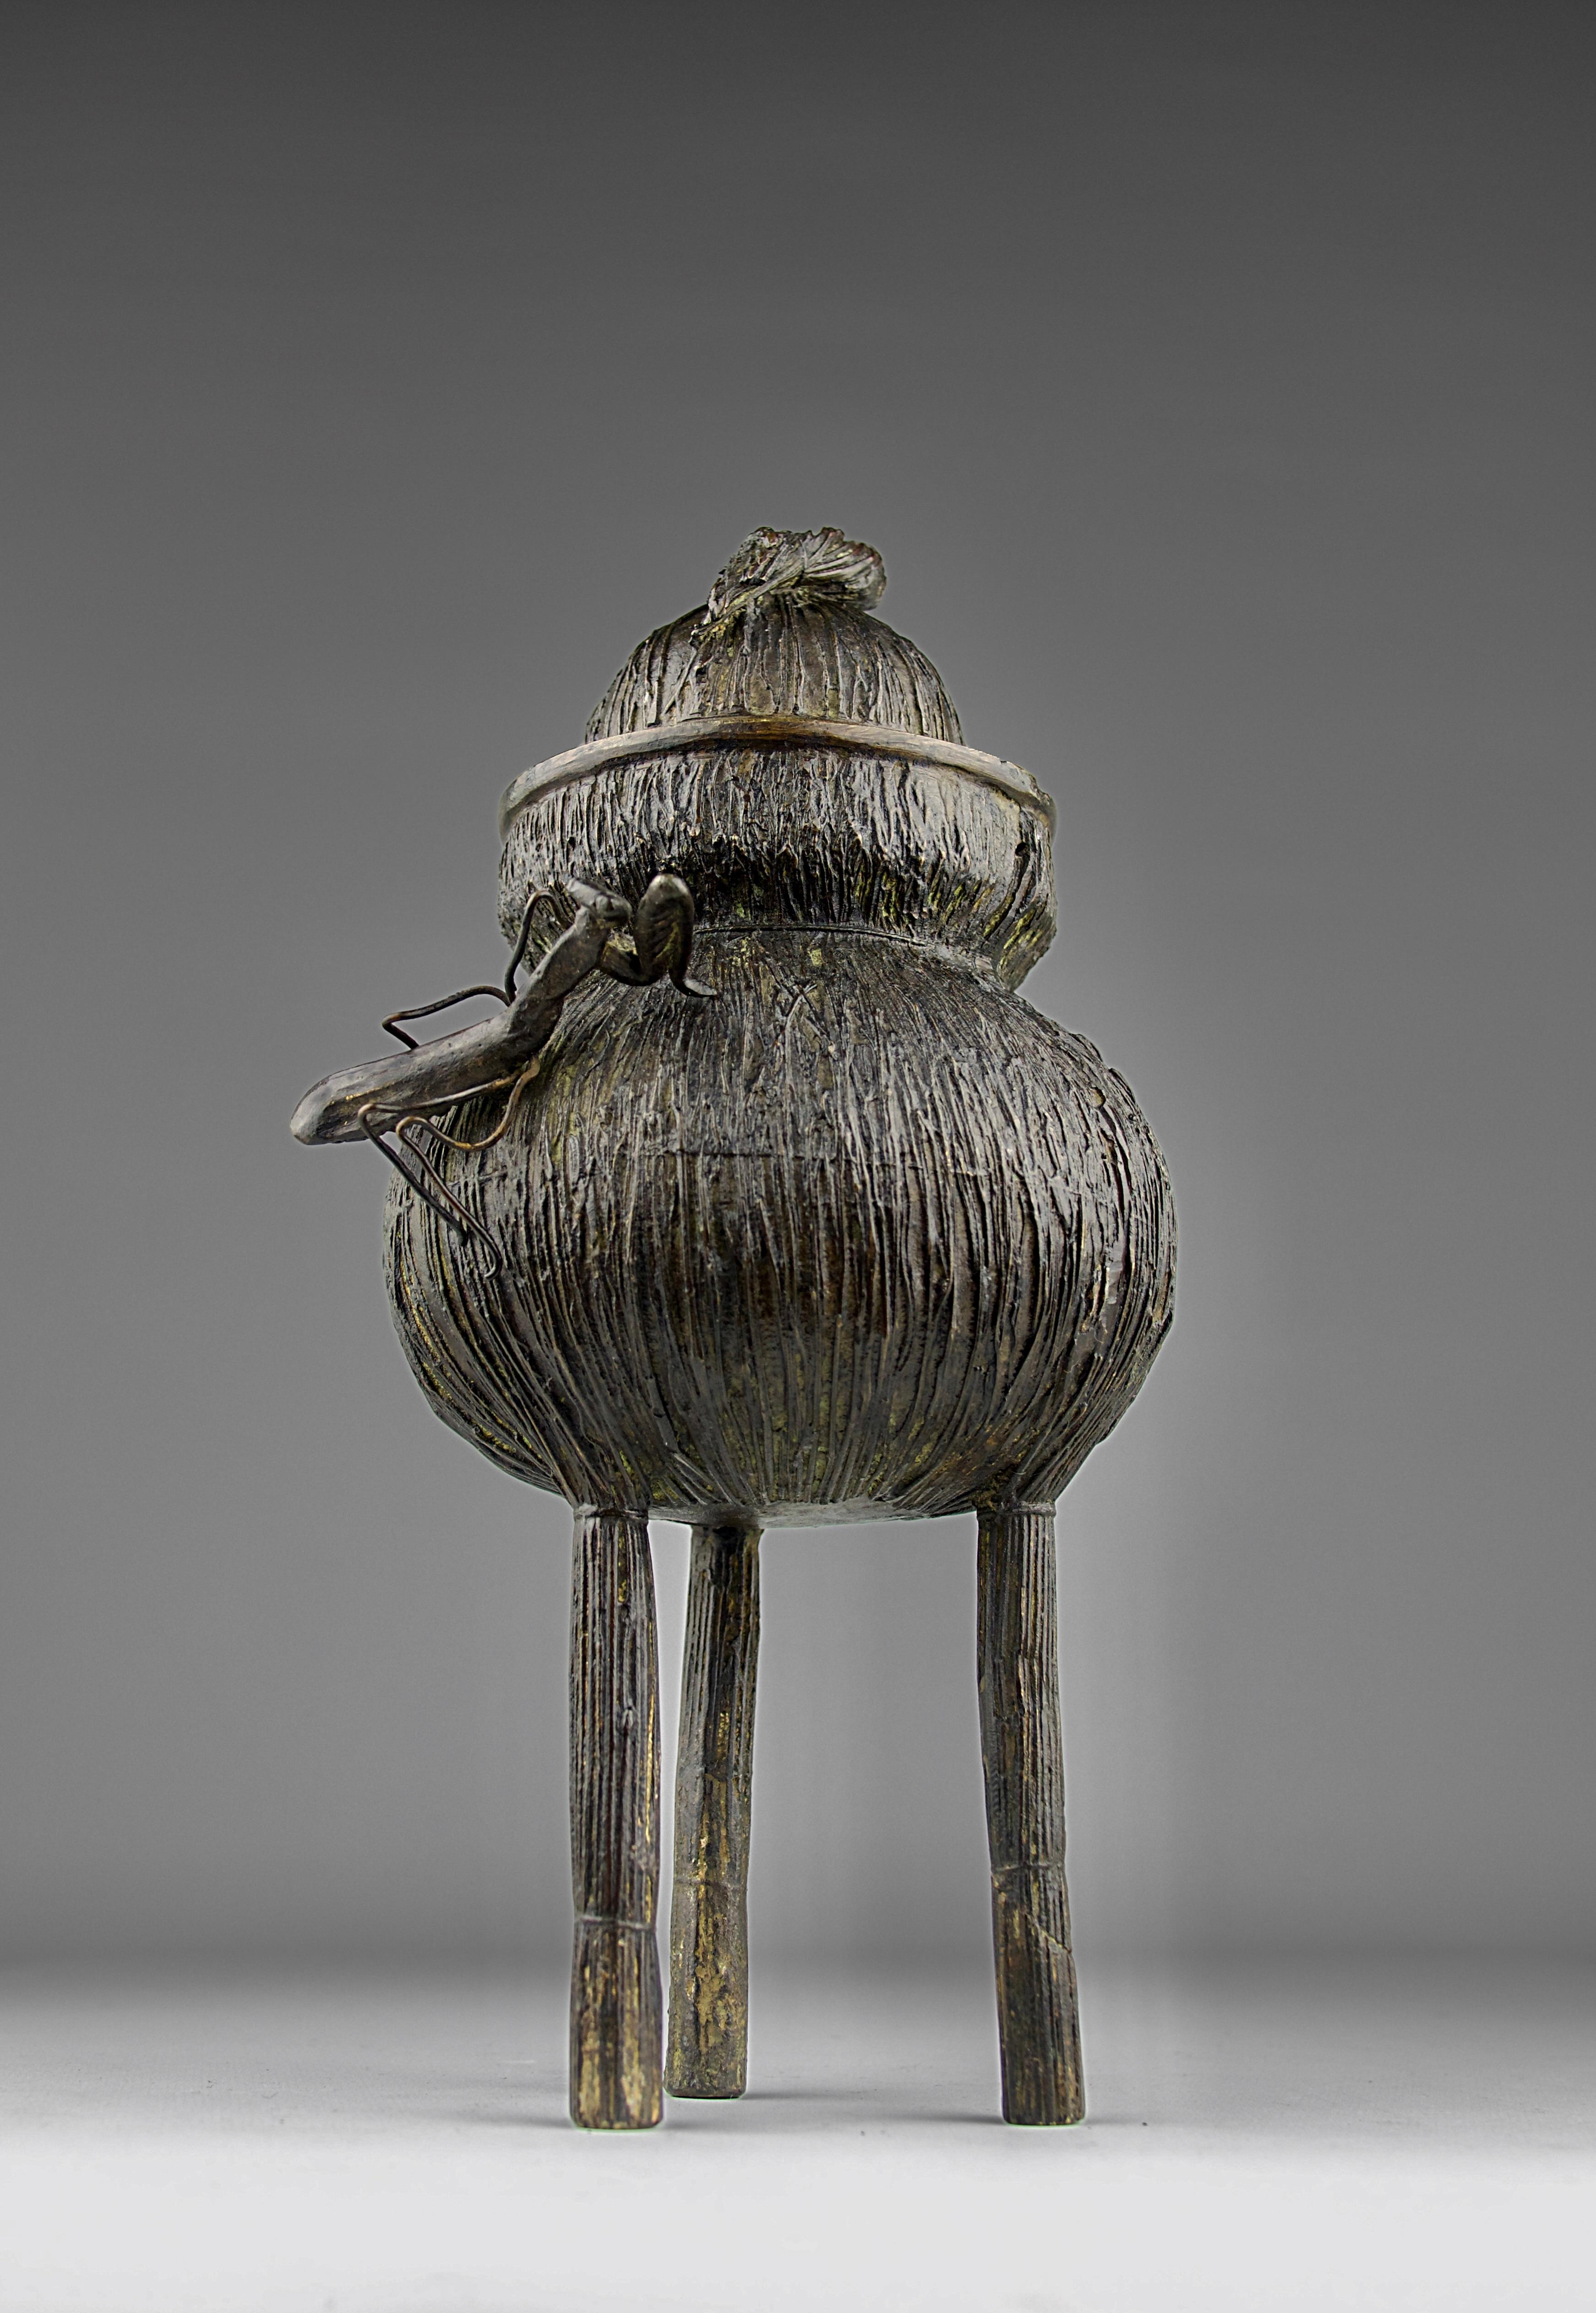 Magnifique brûleur d'encens en forme de panier de paille avec une mante religieuse assise sur le dessus. Bronze, Japon 19ème siècle.

Bon état, oxydation, il manque une patte à la mante religieuse.

Dimensions en cm ( H x L x l ) : 26 x 14,5 x